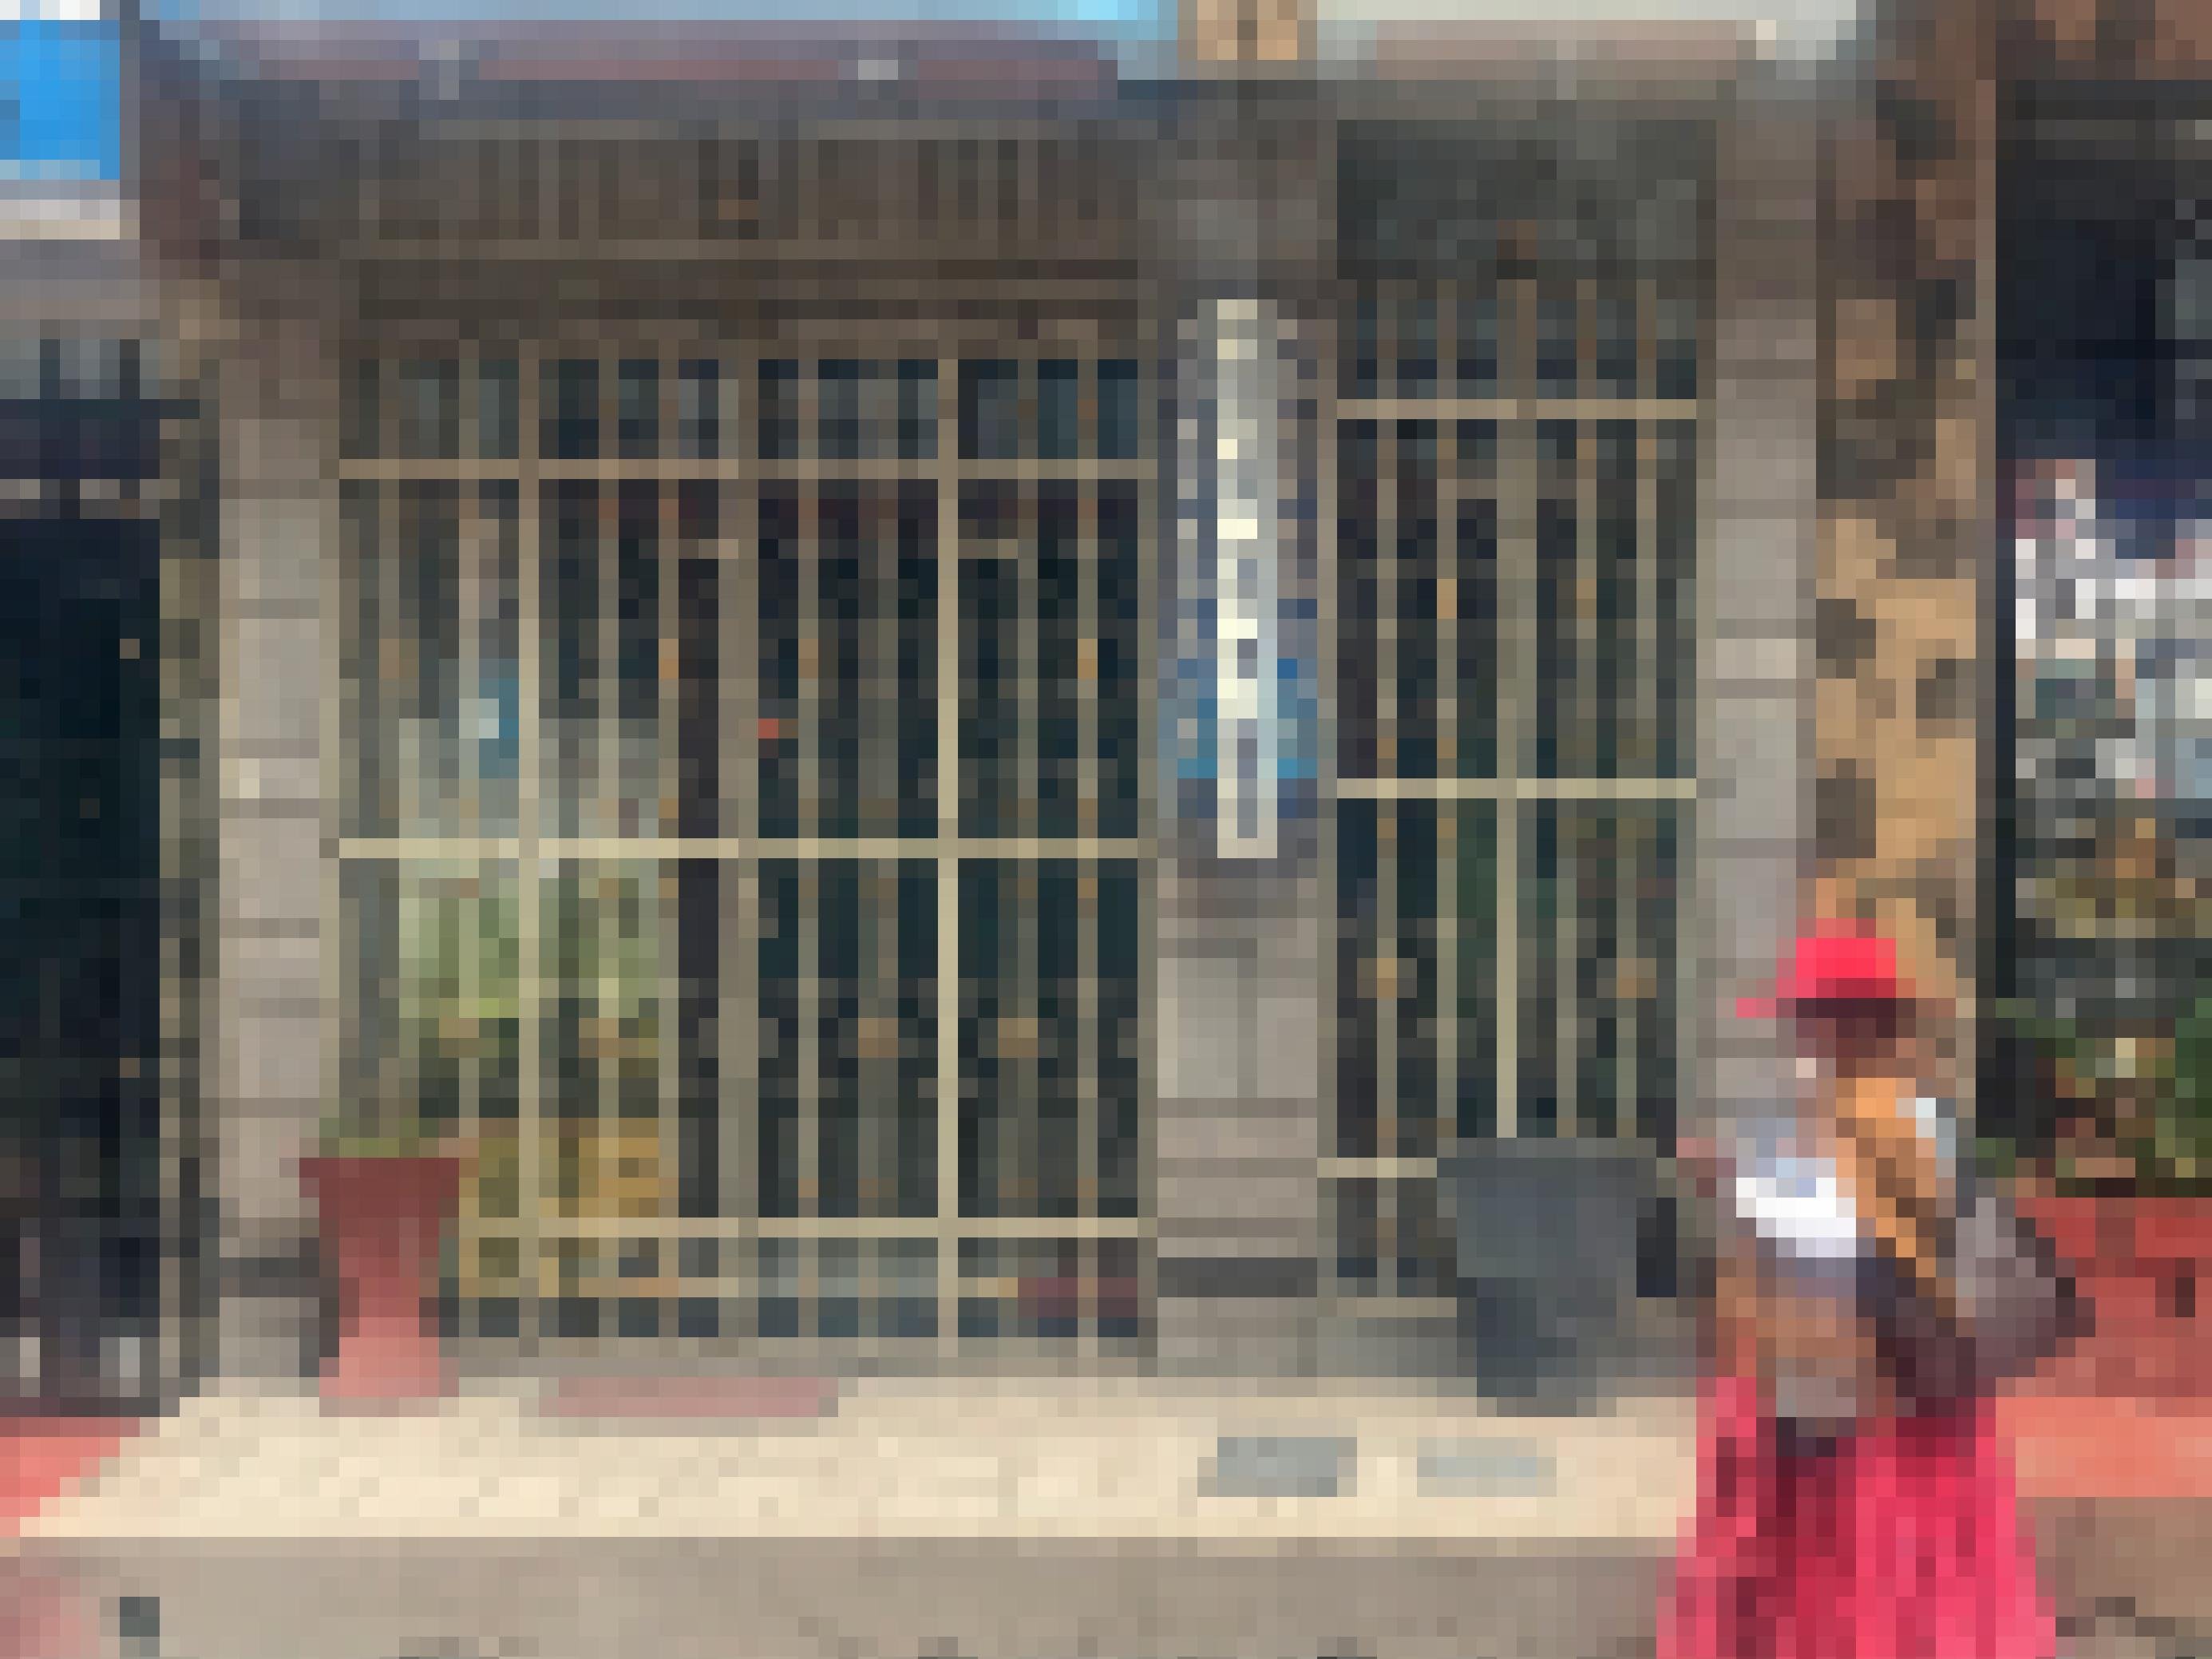 Das Bild zeigt eine Frau in traditioneller peruanischer Kleidung mit Mundschutz, die auf der Straße an einem Laden vorbeigeht.